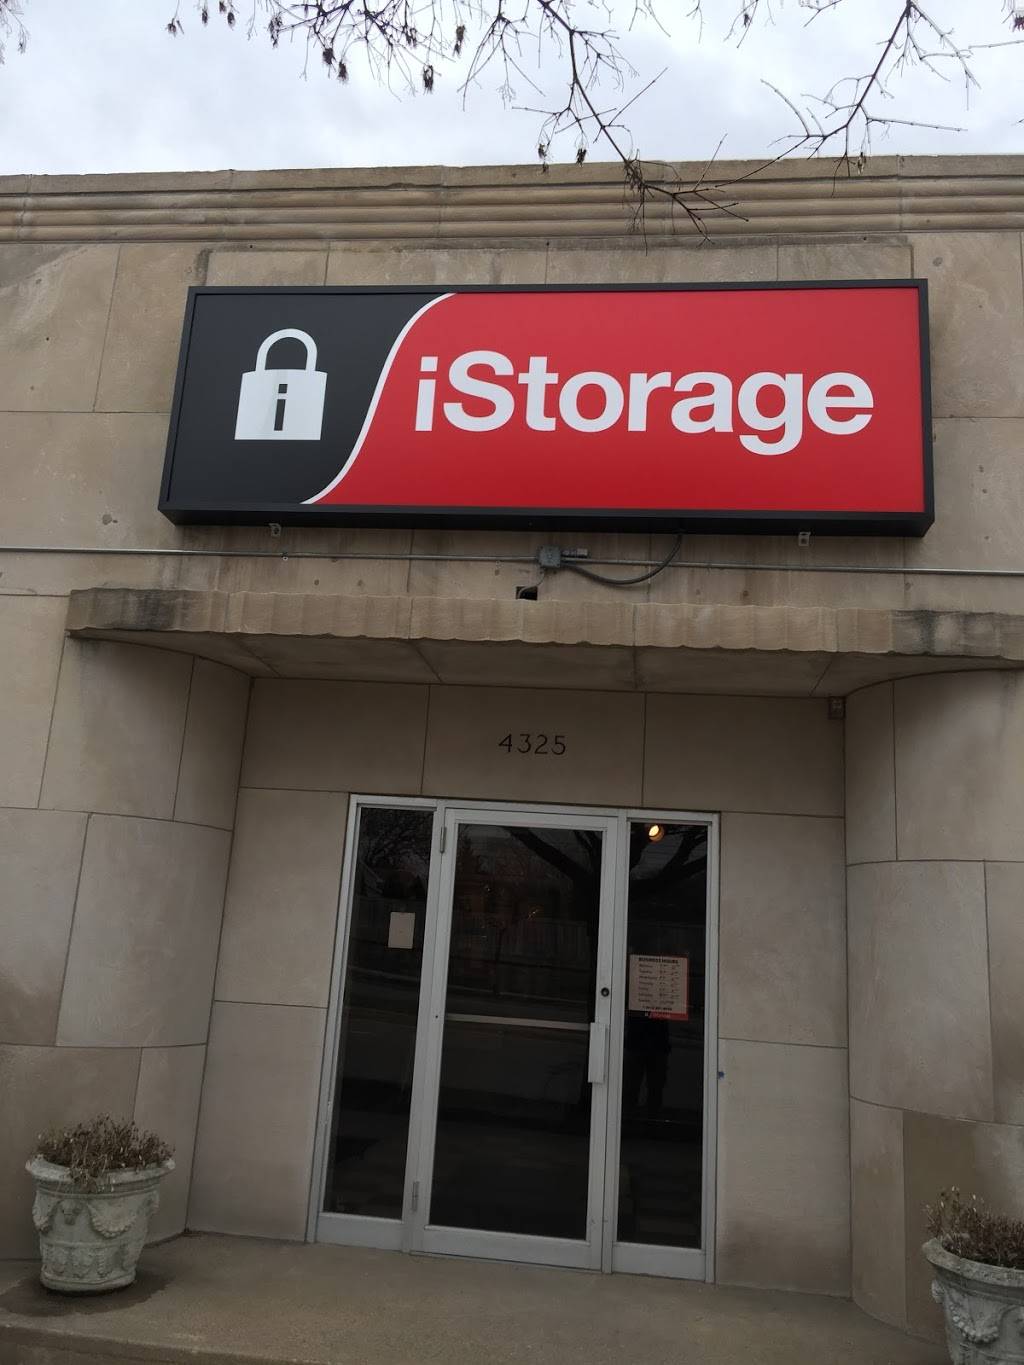 iStorage Self Storage | 4325 Hiawatha Ave, Minneapolis, MN 55406, USA | Phone: (612) 540-0544